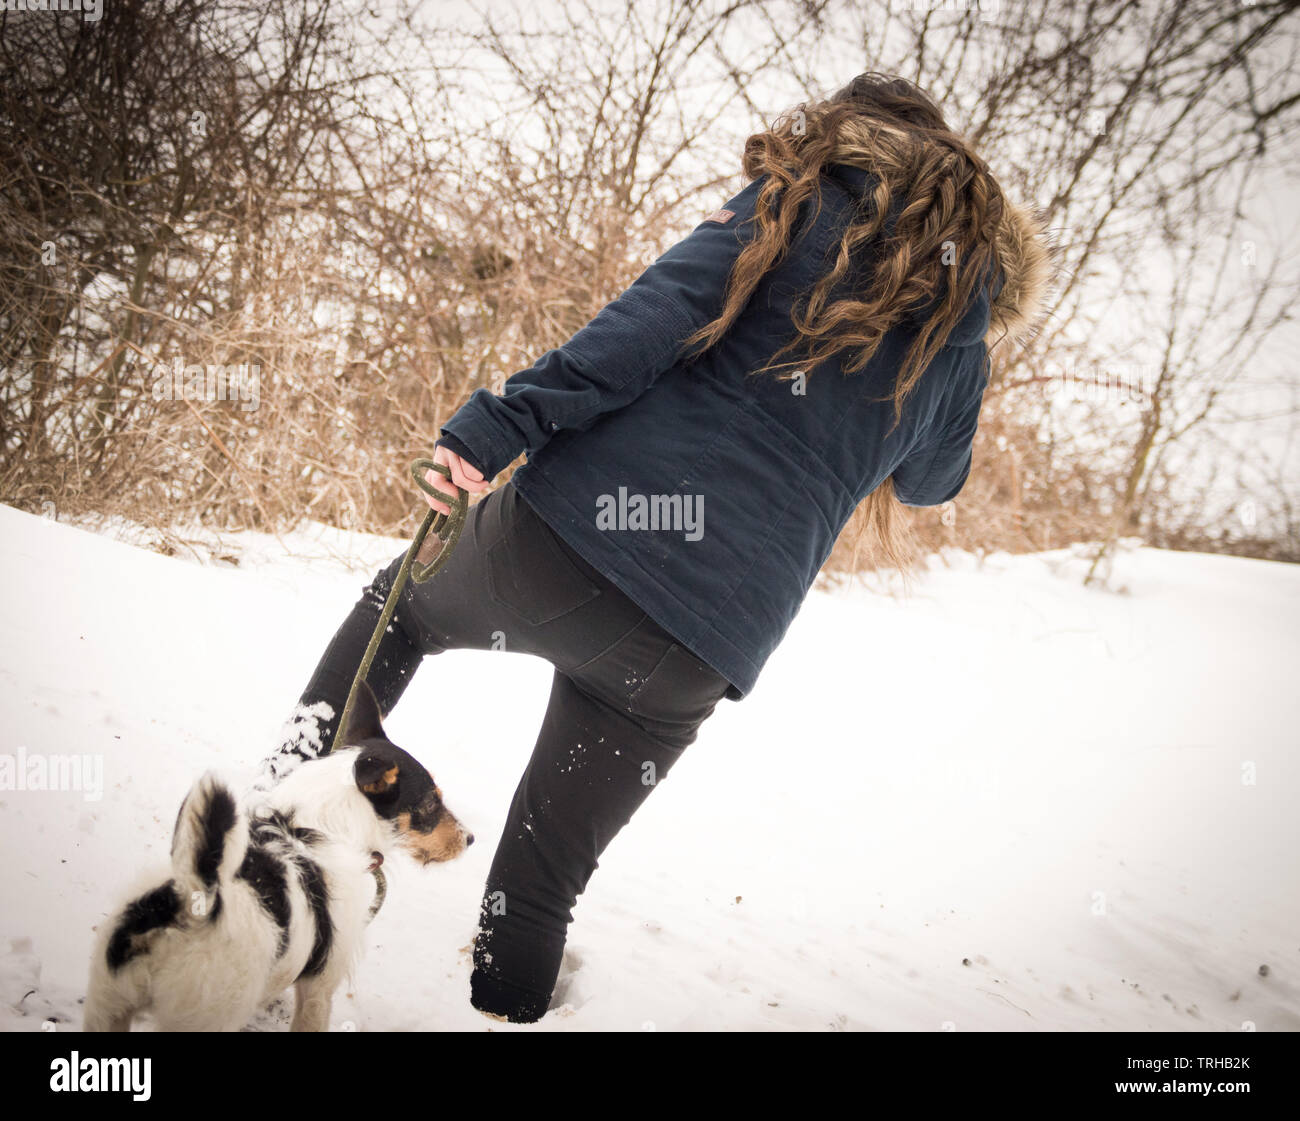 Junges Mädchen geht in den Abend mit ihr langes braunes Haar und den fallenden Schnee weht im Wind mit ihren Gläubigen bester Freund ihr Jack Russell Hund Stockfoto